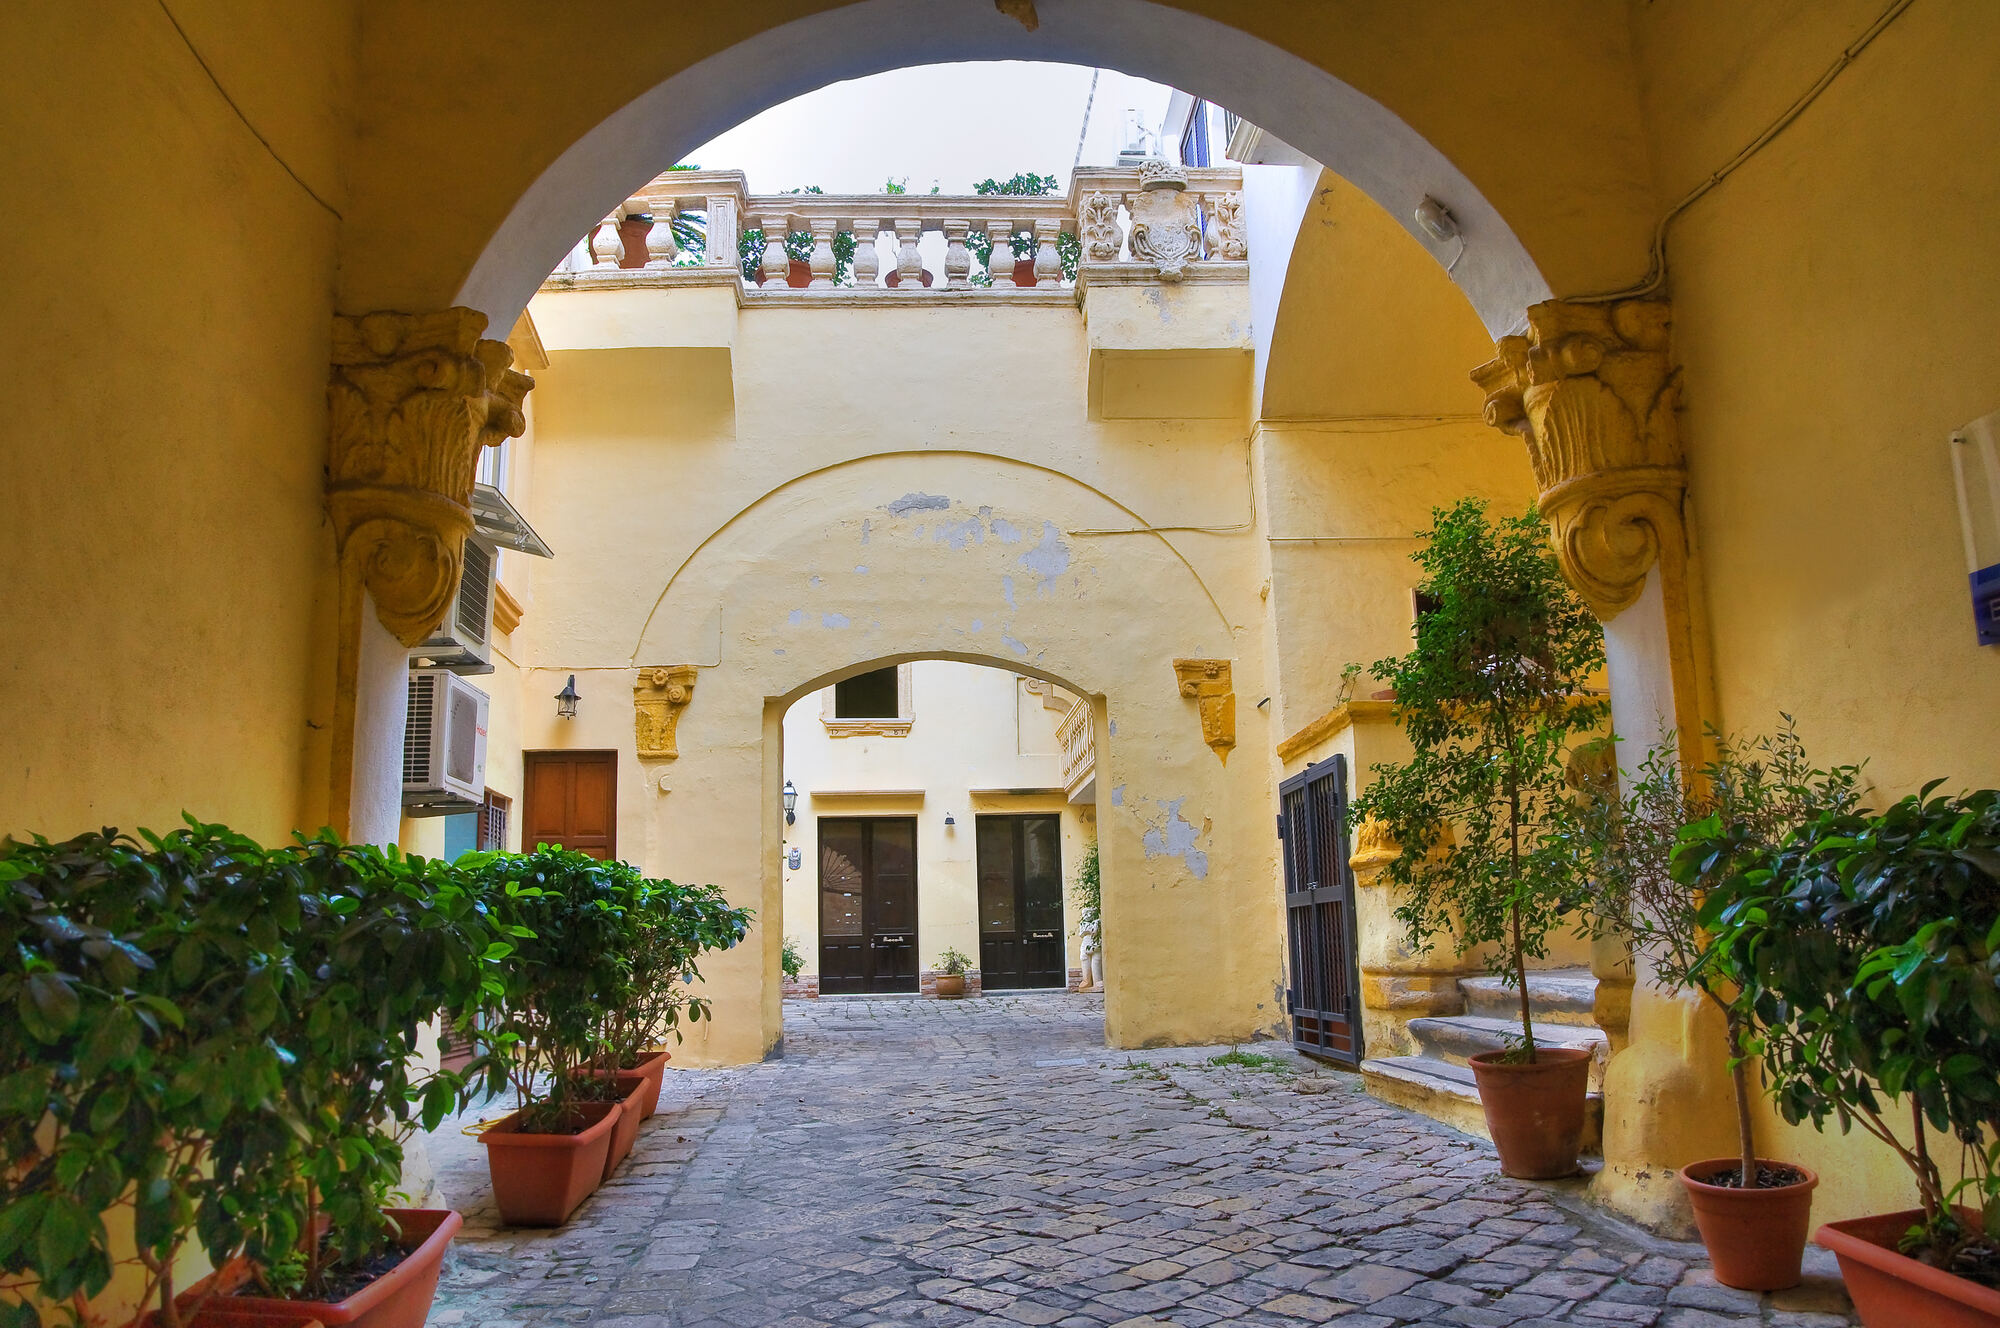 Splendido Palazzo Balsamo di Gallipoli, esempio di residenza civile barocca con elementi architettonici decorati.